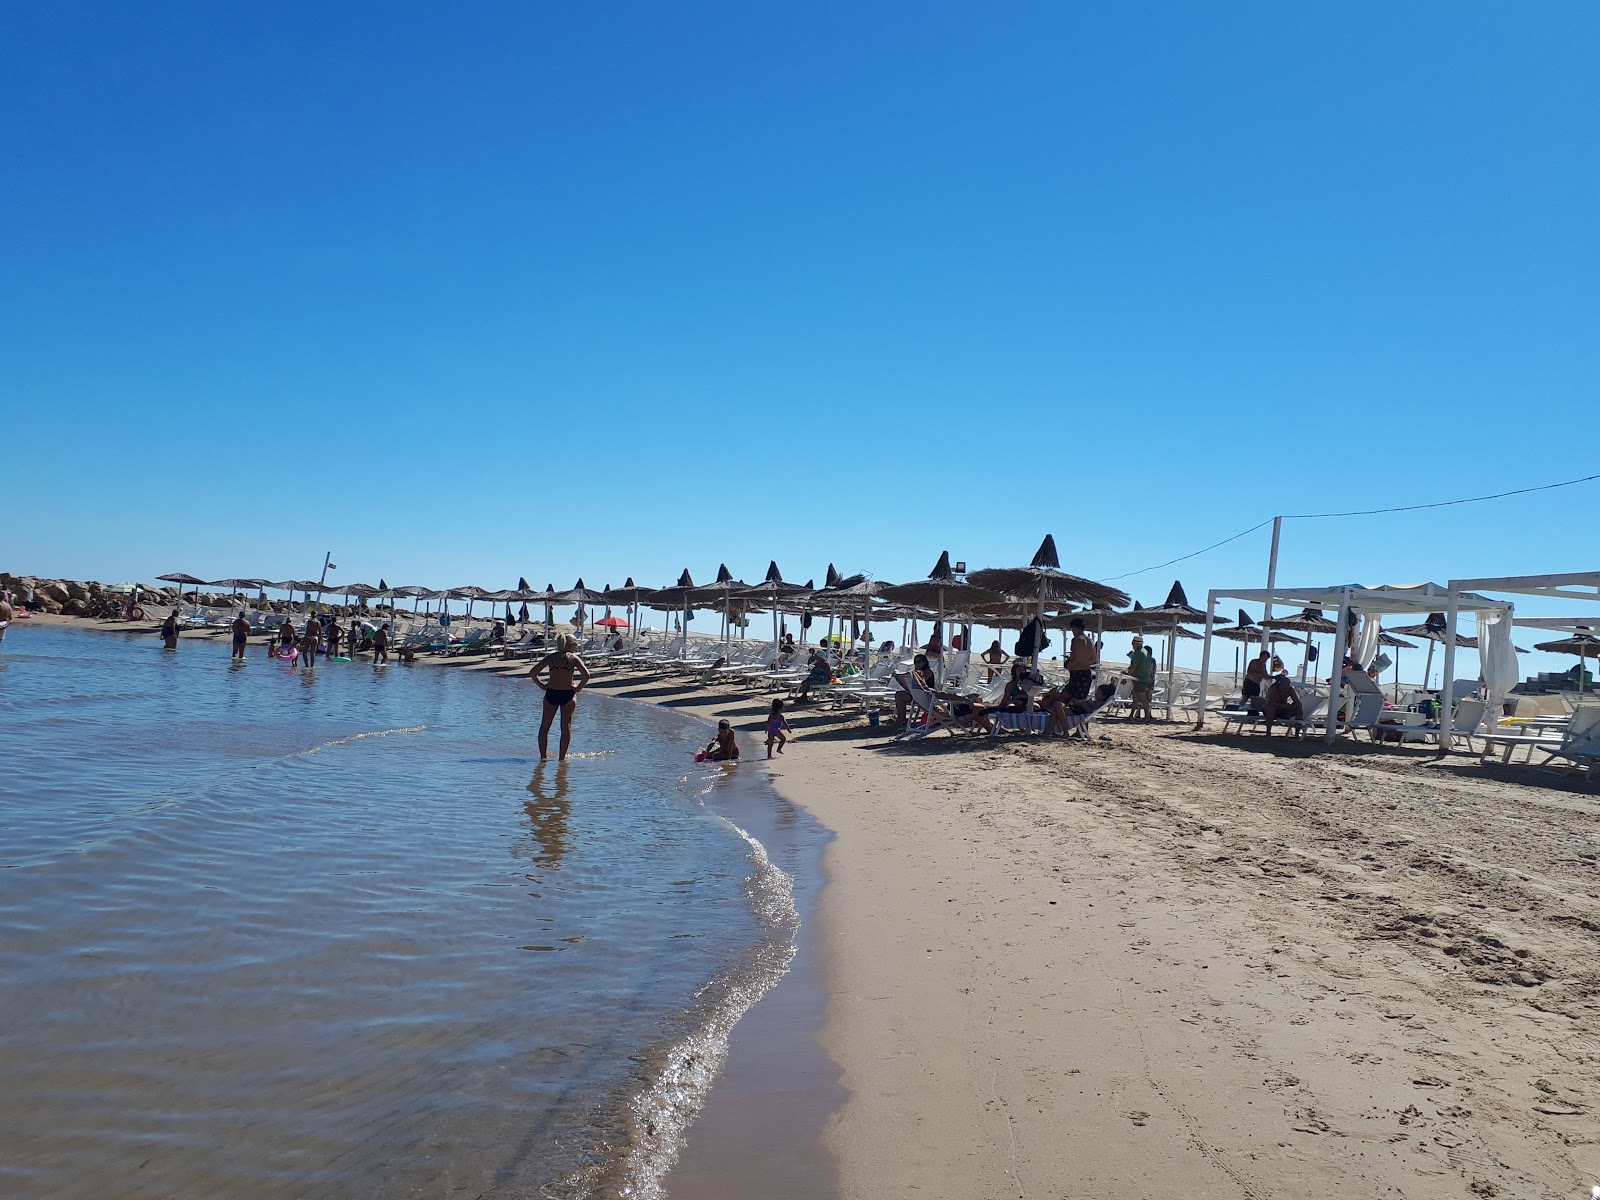 Campo di Mare beach'in fotoğrafı orta koylar ile birlikte